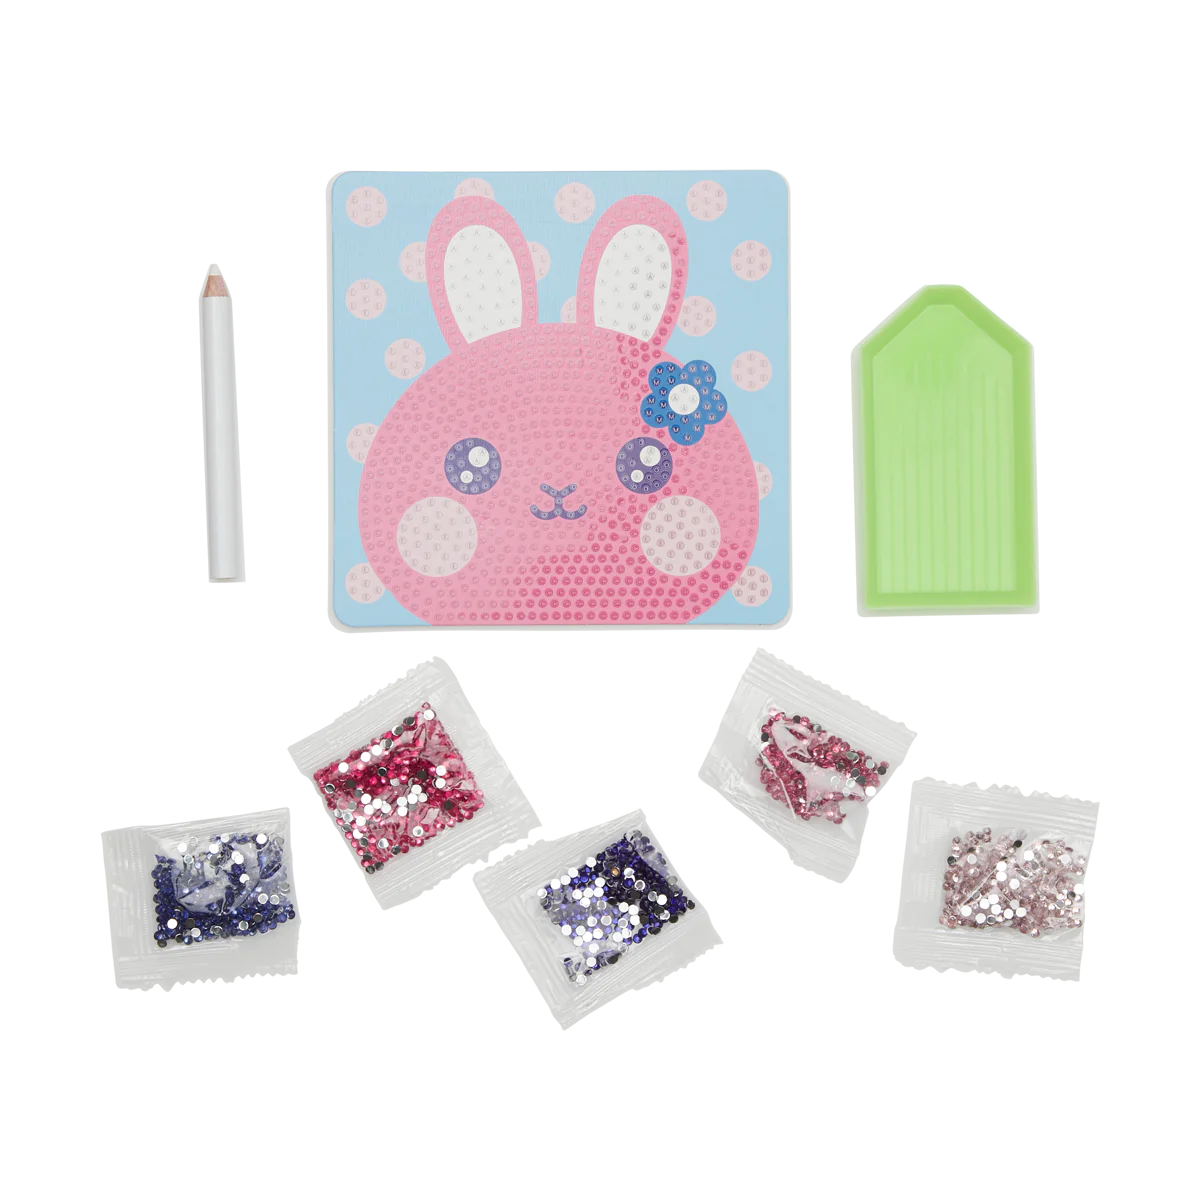 161-086-Razzle-Dazzle-DIY-Mini-Gem-Art-Kit-Bouncy-Bunny-O1.webp?0